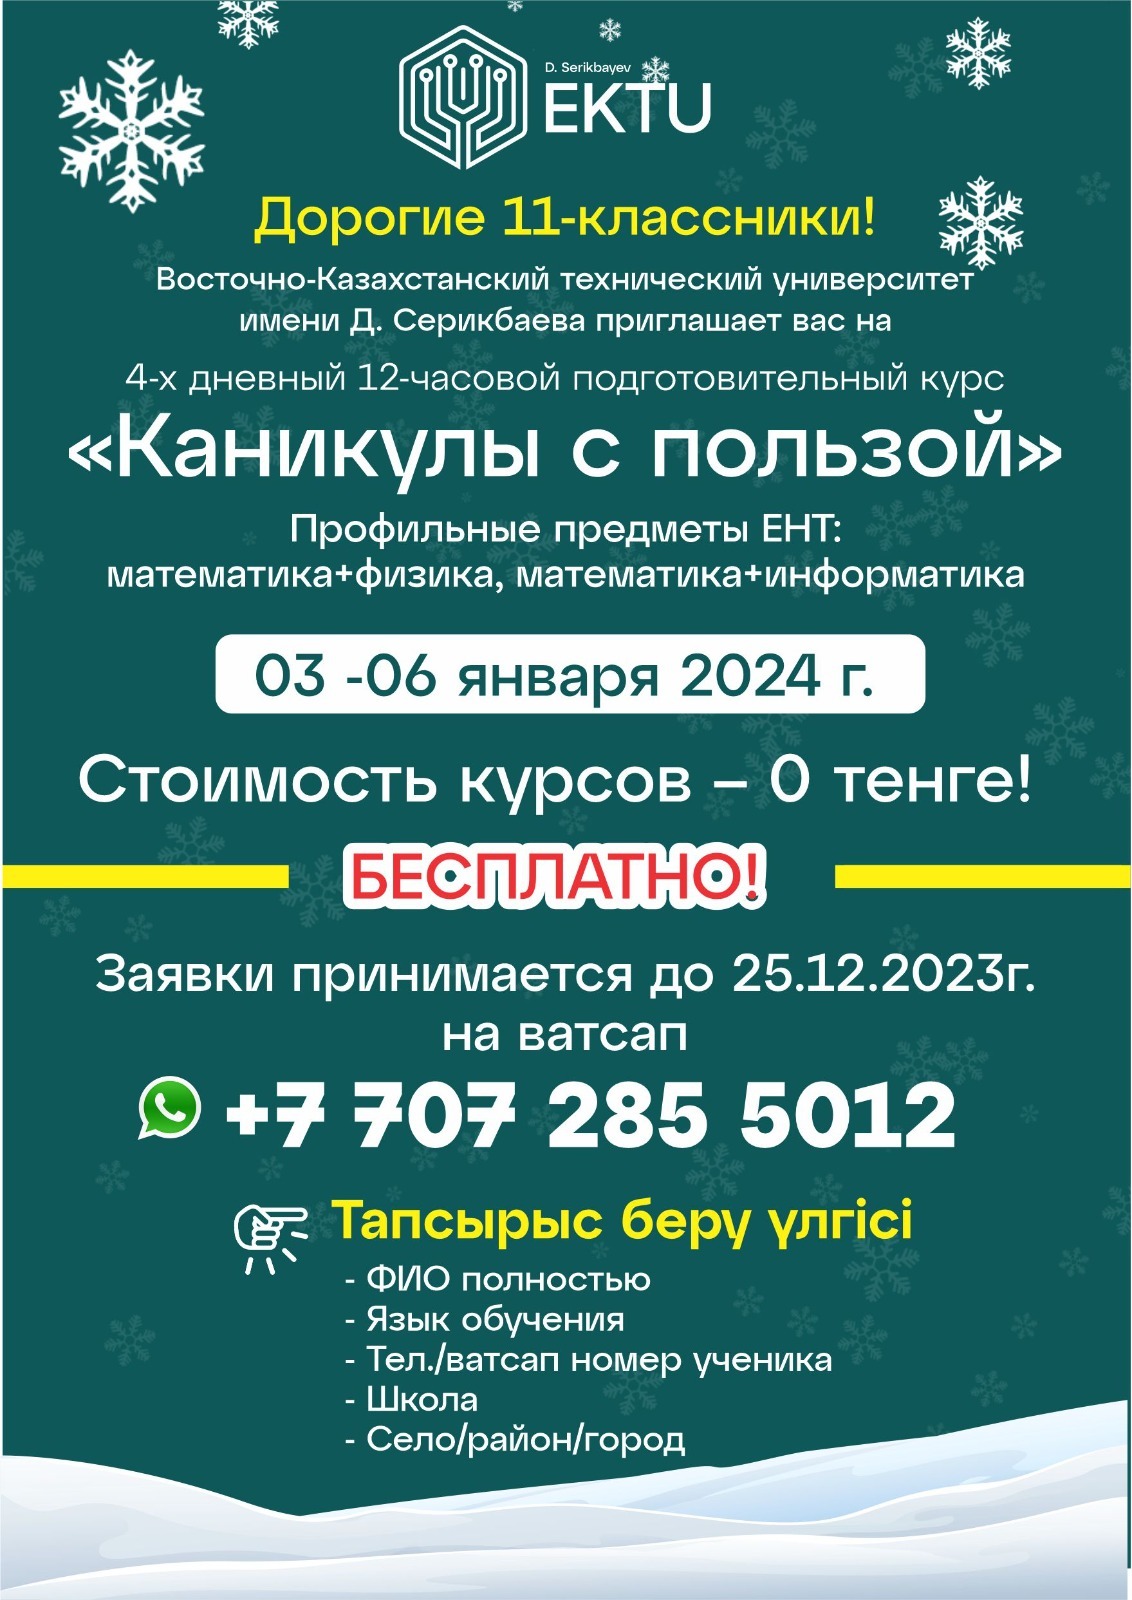 Восточно-Казахстанский технический университет имени Д. Серикбаева приглашает вас на 4-х дневный 12-часовой подготовительный курс «Каникулы с пользой!»